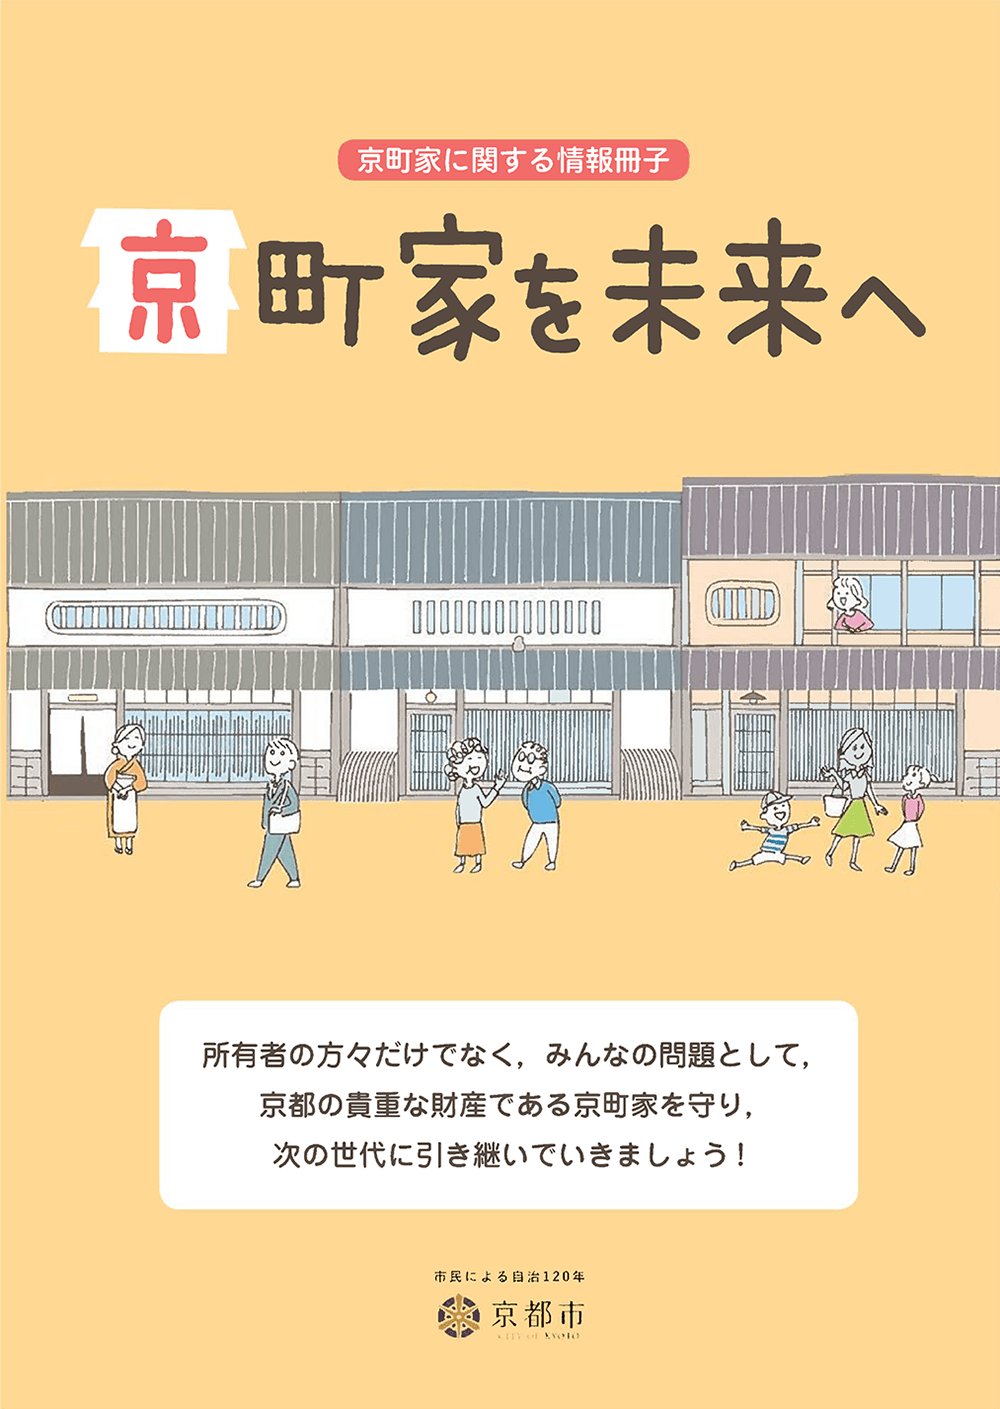 京町家に関する情報冊子